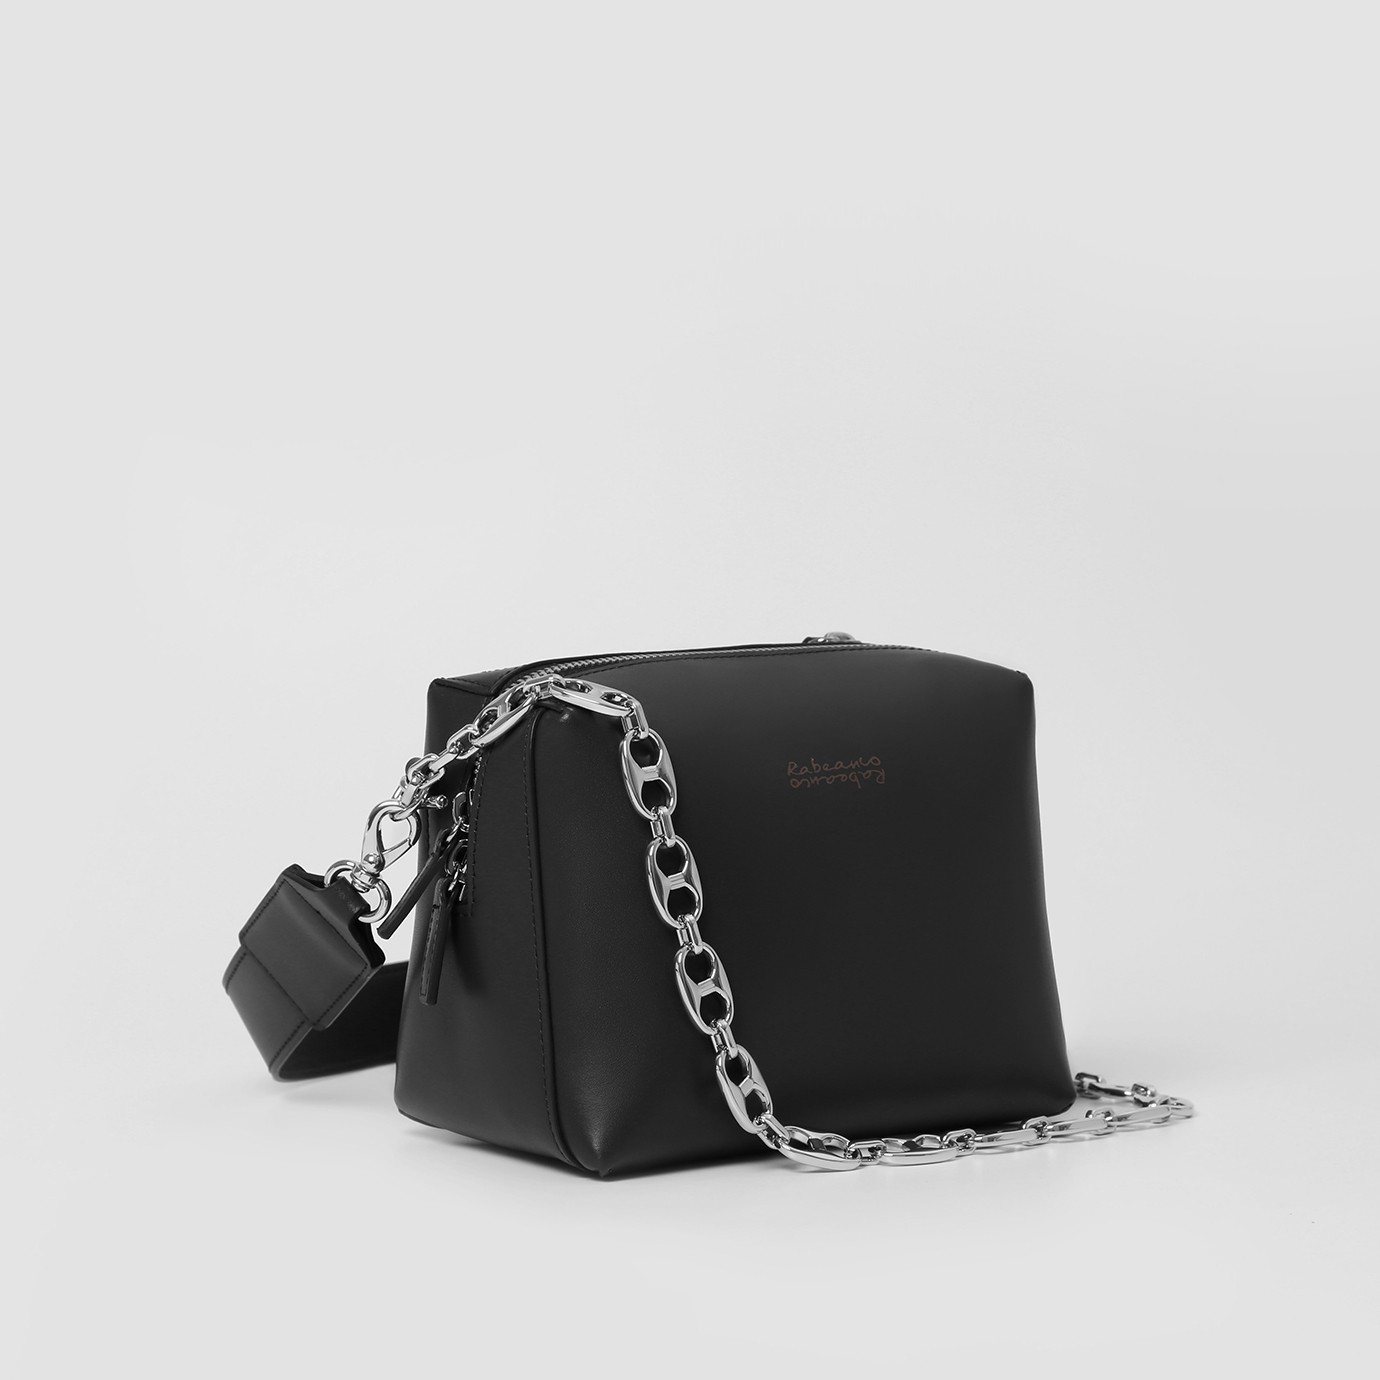 RABEANCO - Anchor Chain Mini Bag